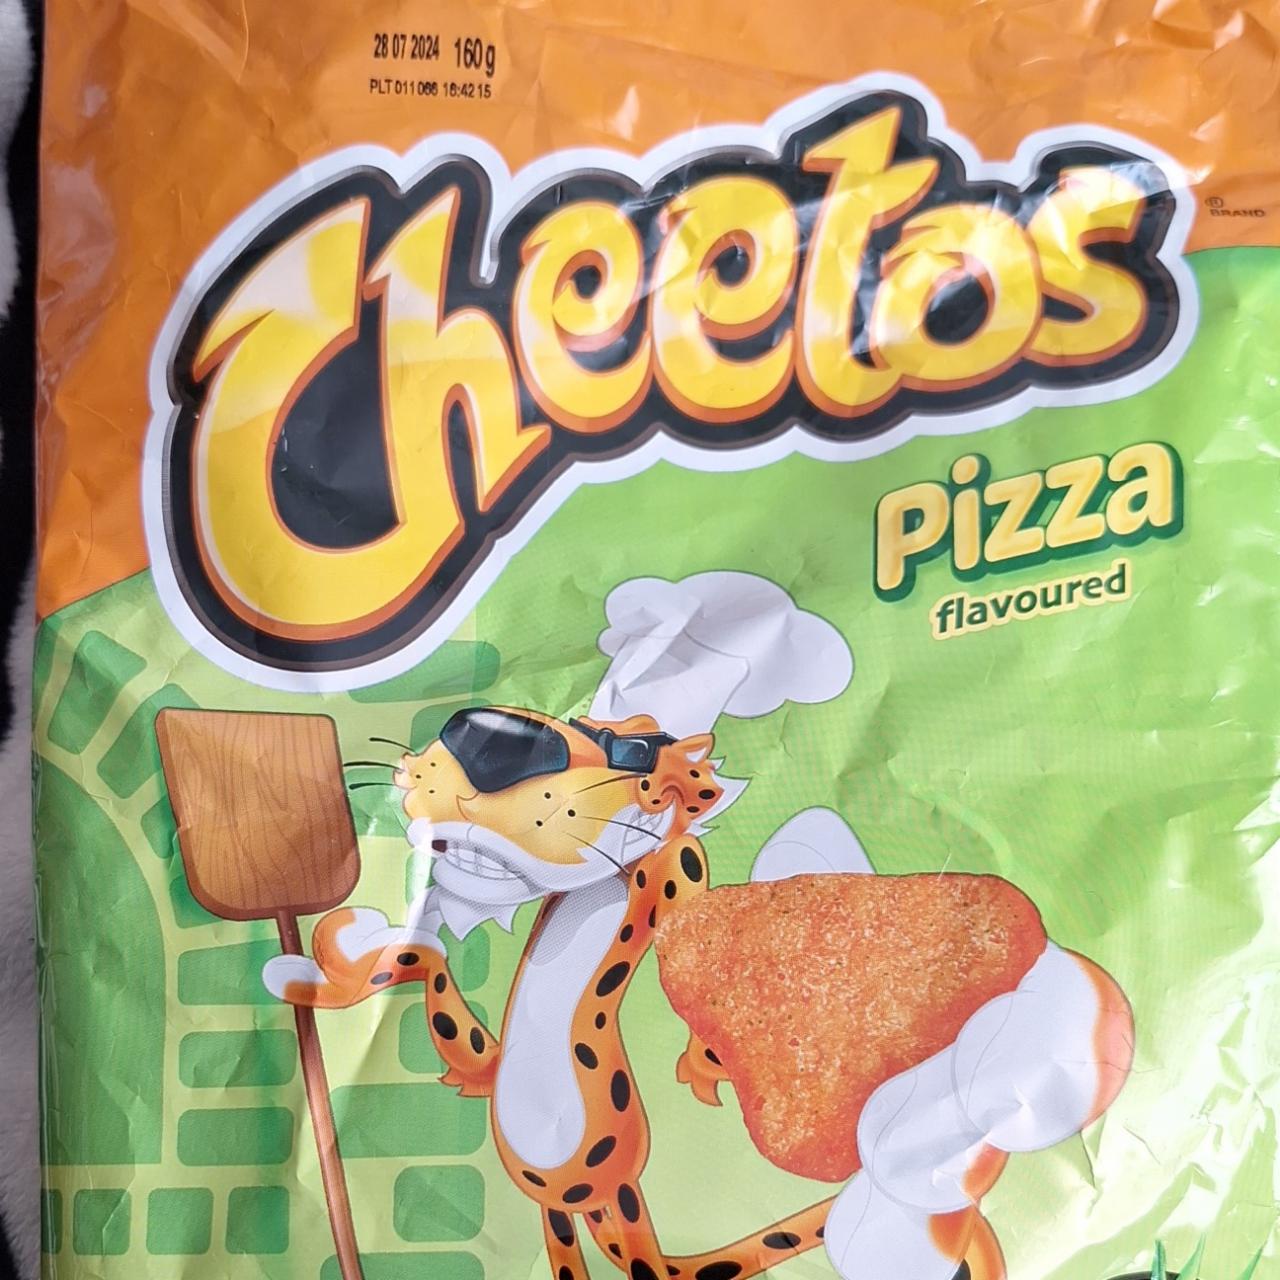 Zdjęcia - Chrupki kukurydziane o smaku pizzy Cheetos